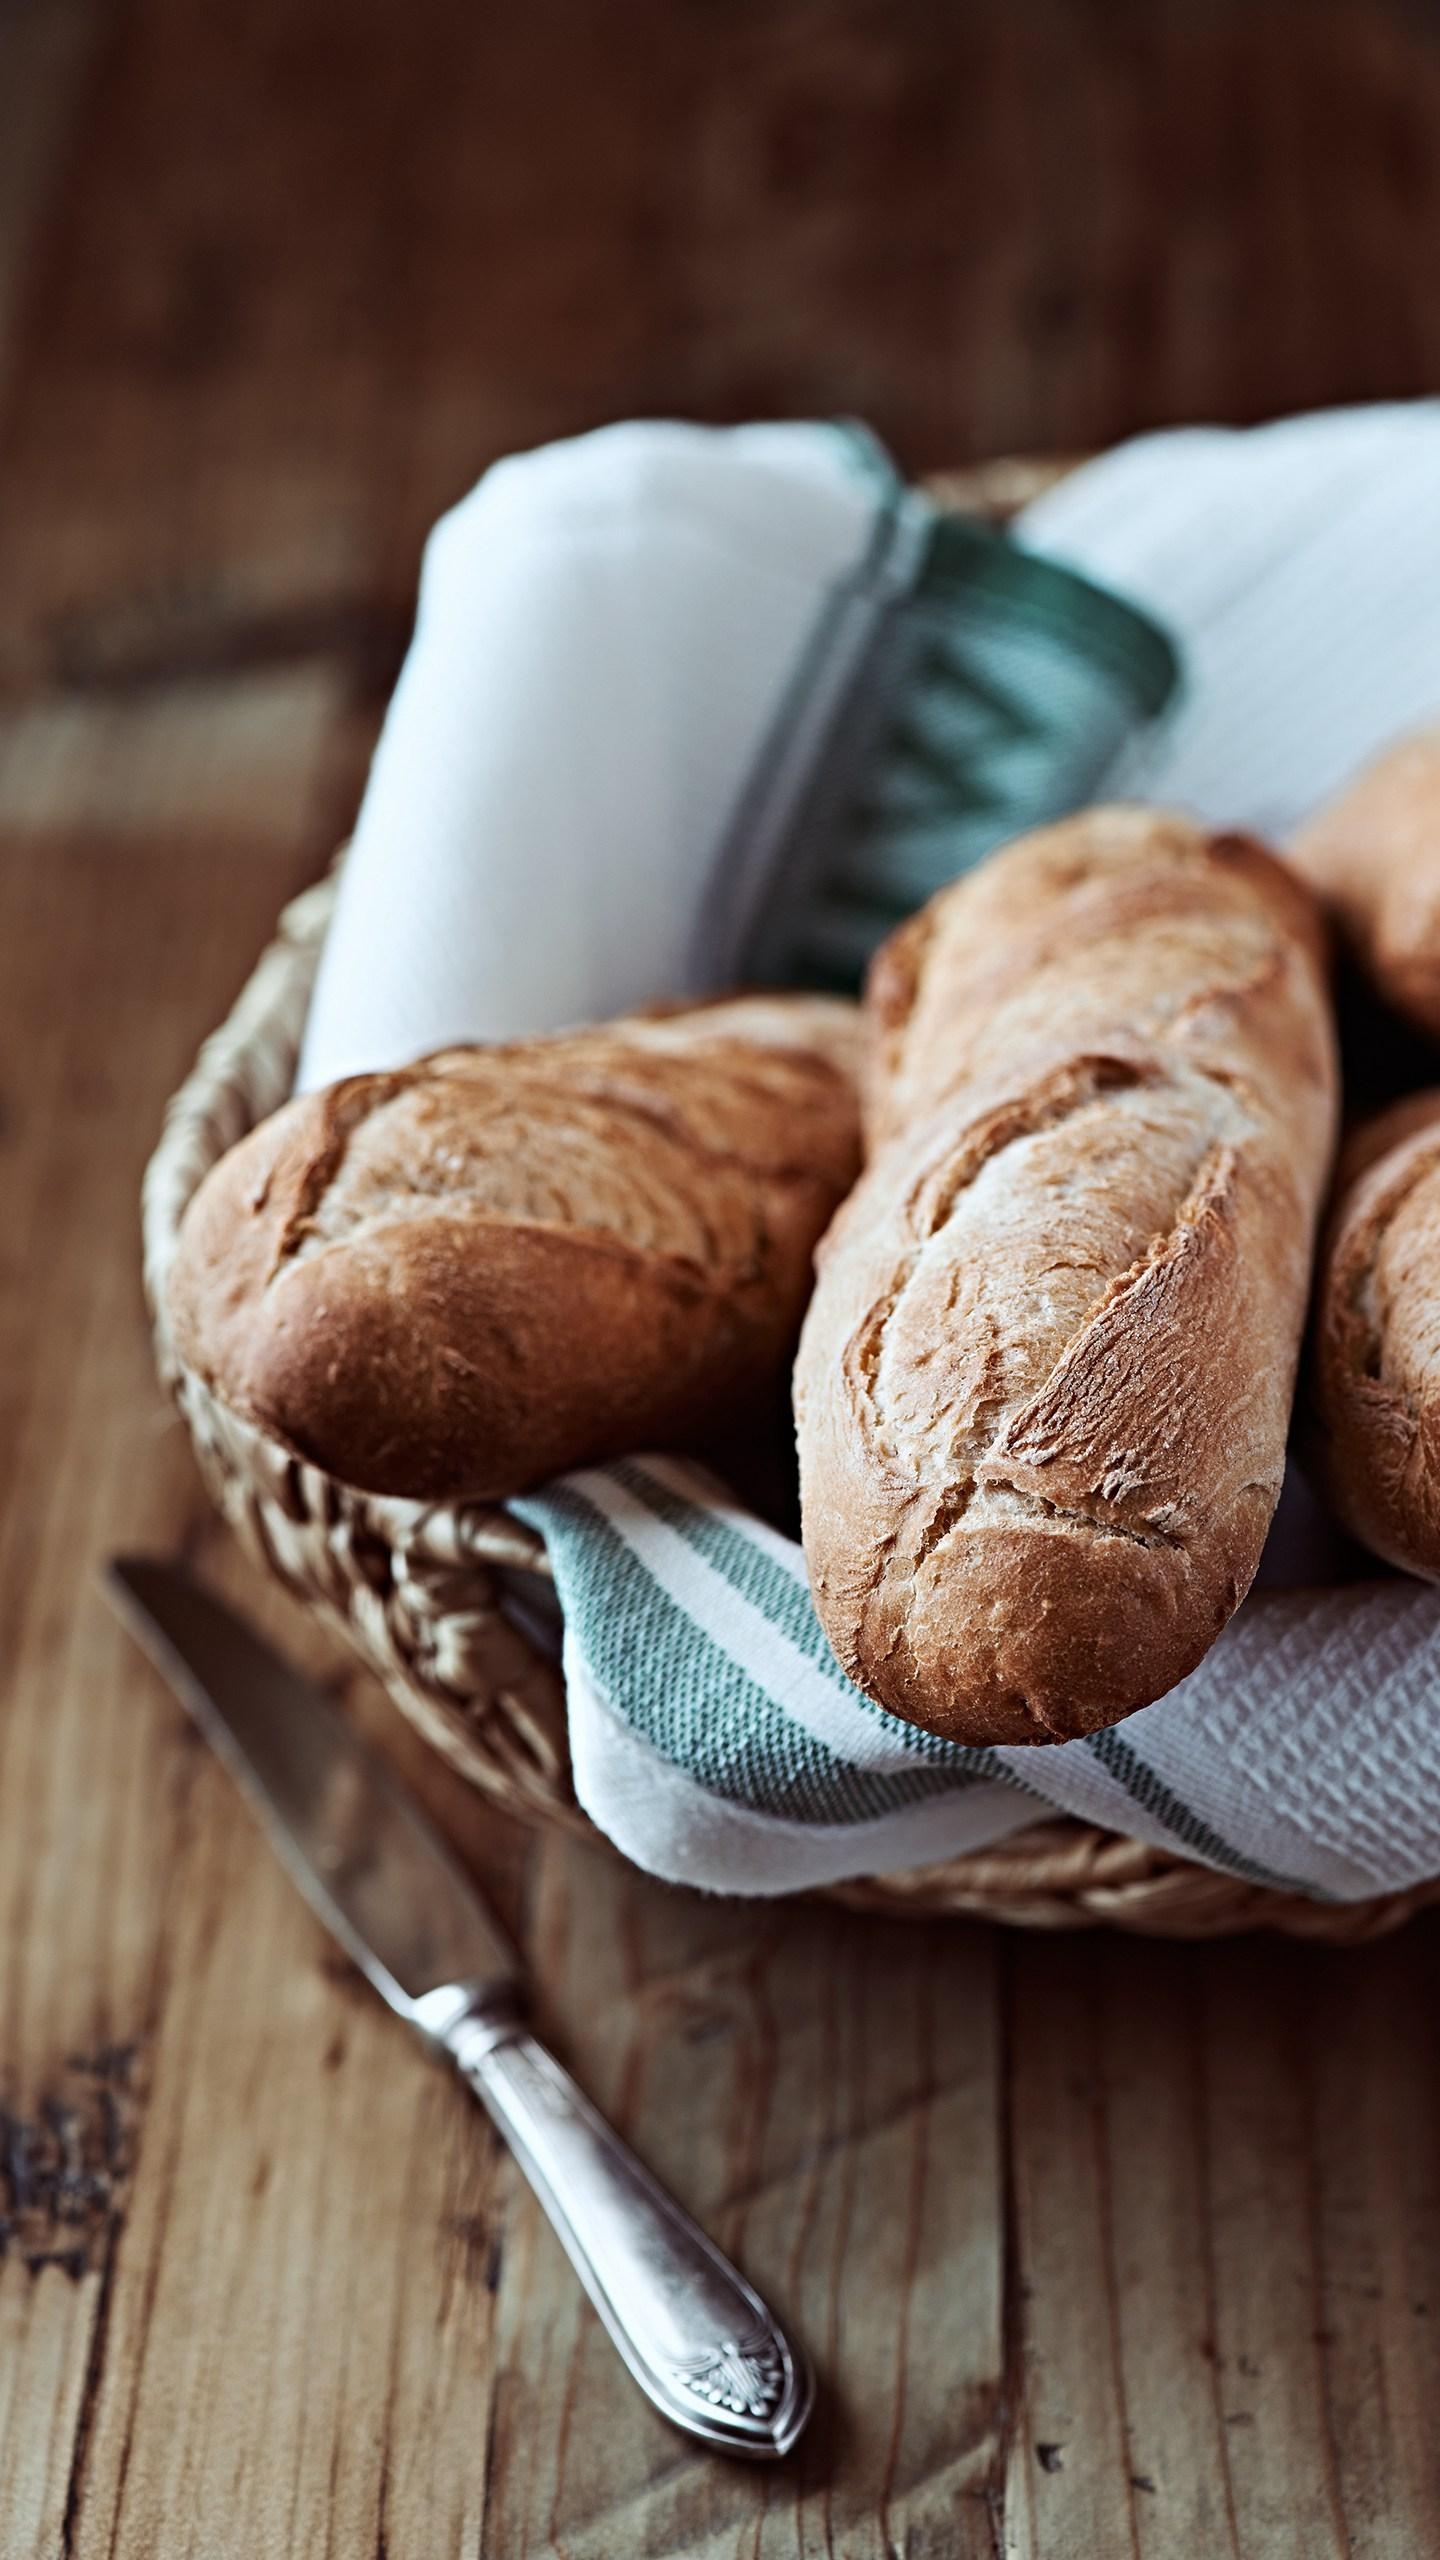 法国传统面包——长棍